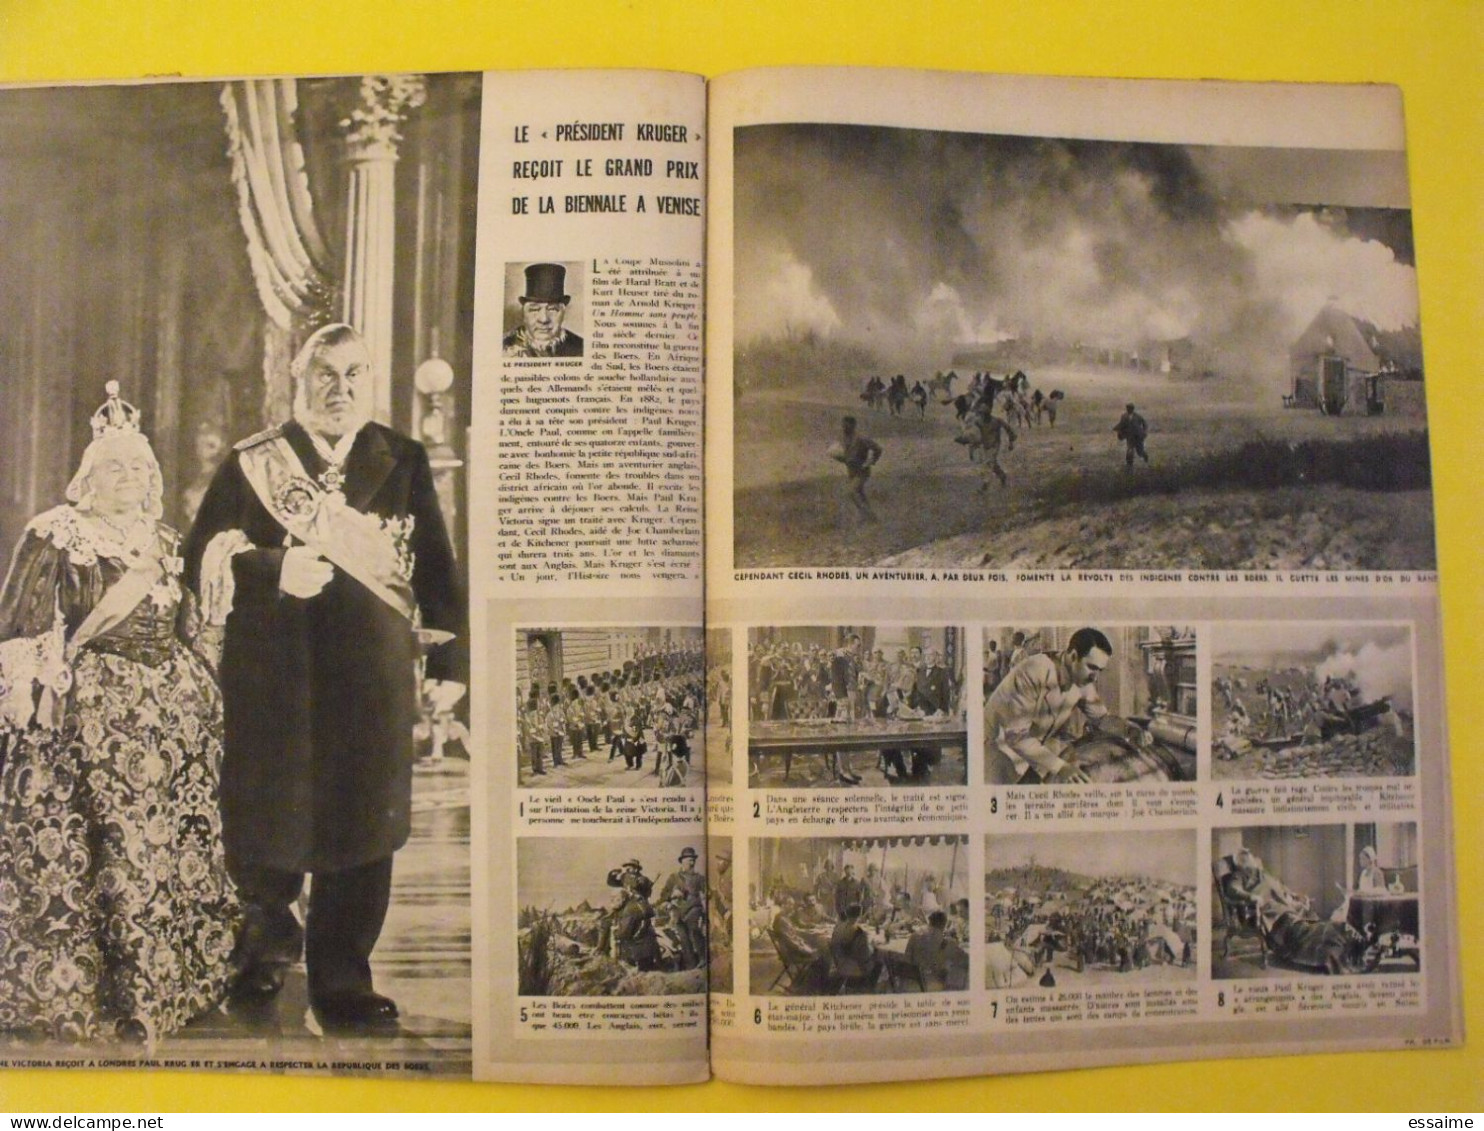 6 revues La semaine de 1941. actualités guerre. photos collaboration pétain inonu bakou vichy  afghanistan farman japon